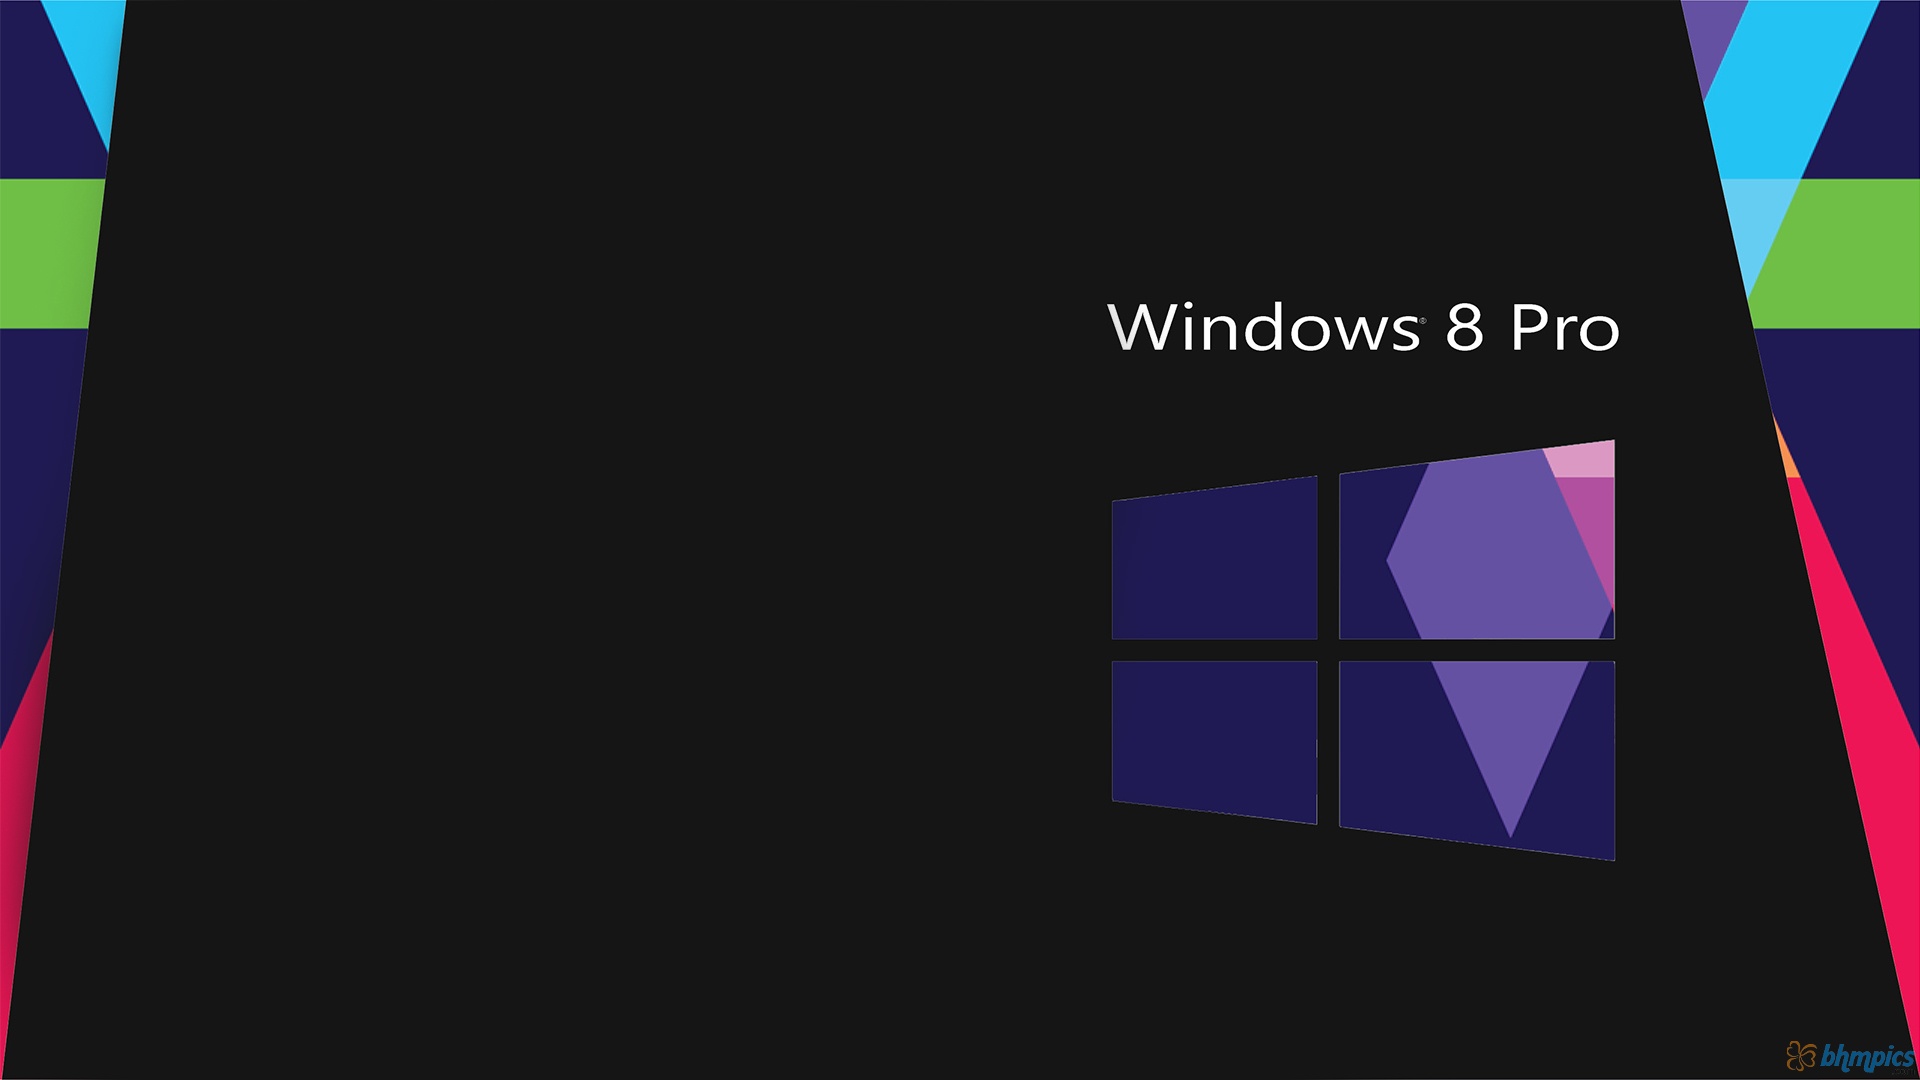 Windows On Black Hd Desktop Wallpaper - Windows  Pro Wallpaper Hd -  1920x1080 Wallpaper 